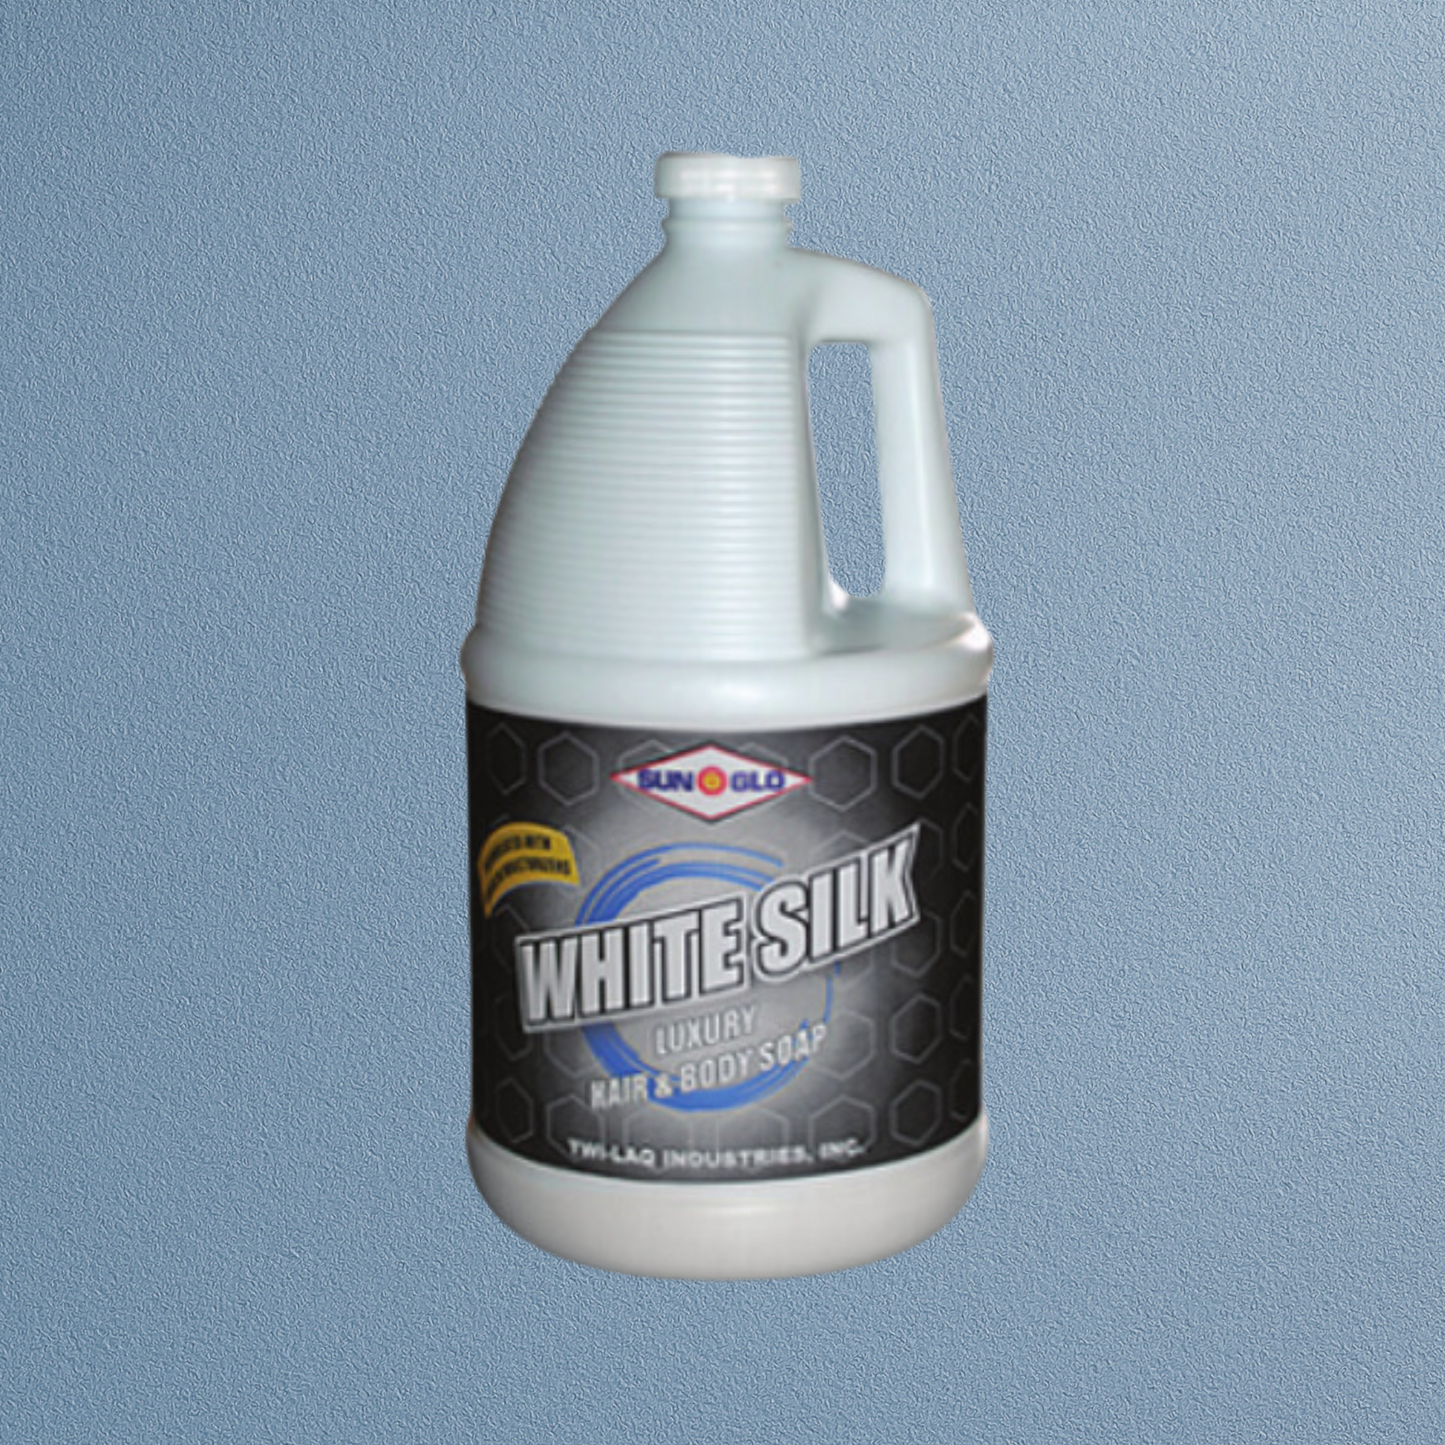 SUN-GLO White Silk Luxury Hand Soap (4x1 Gallon Case)